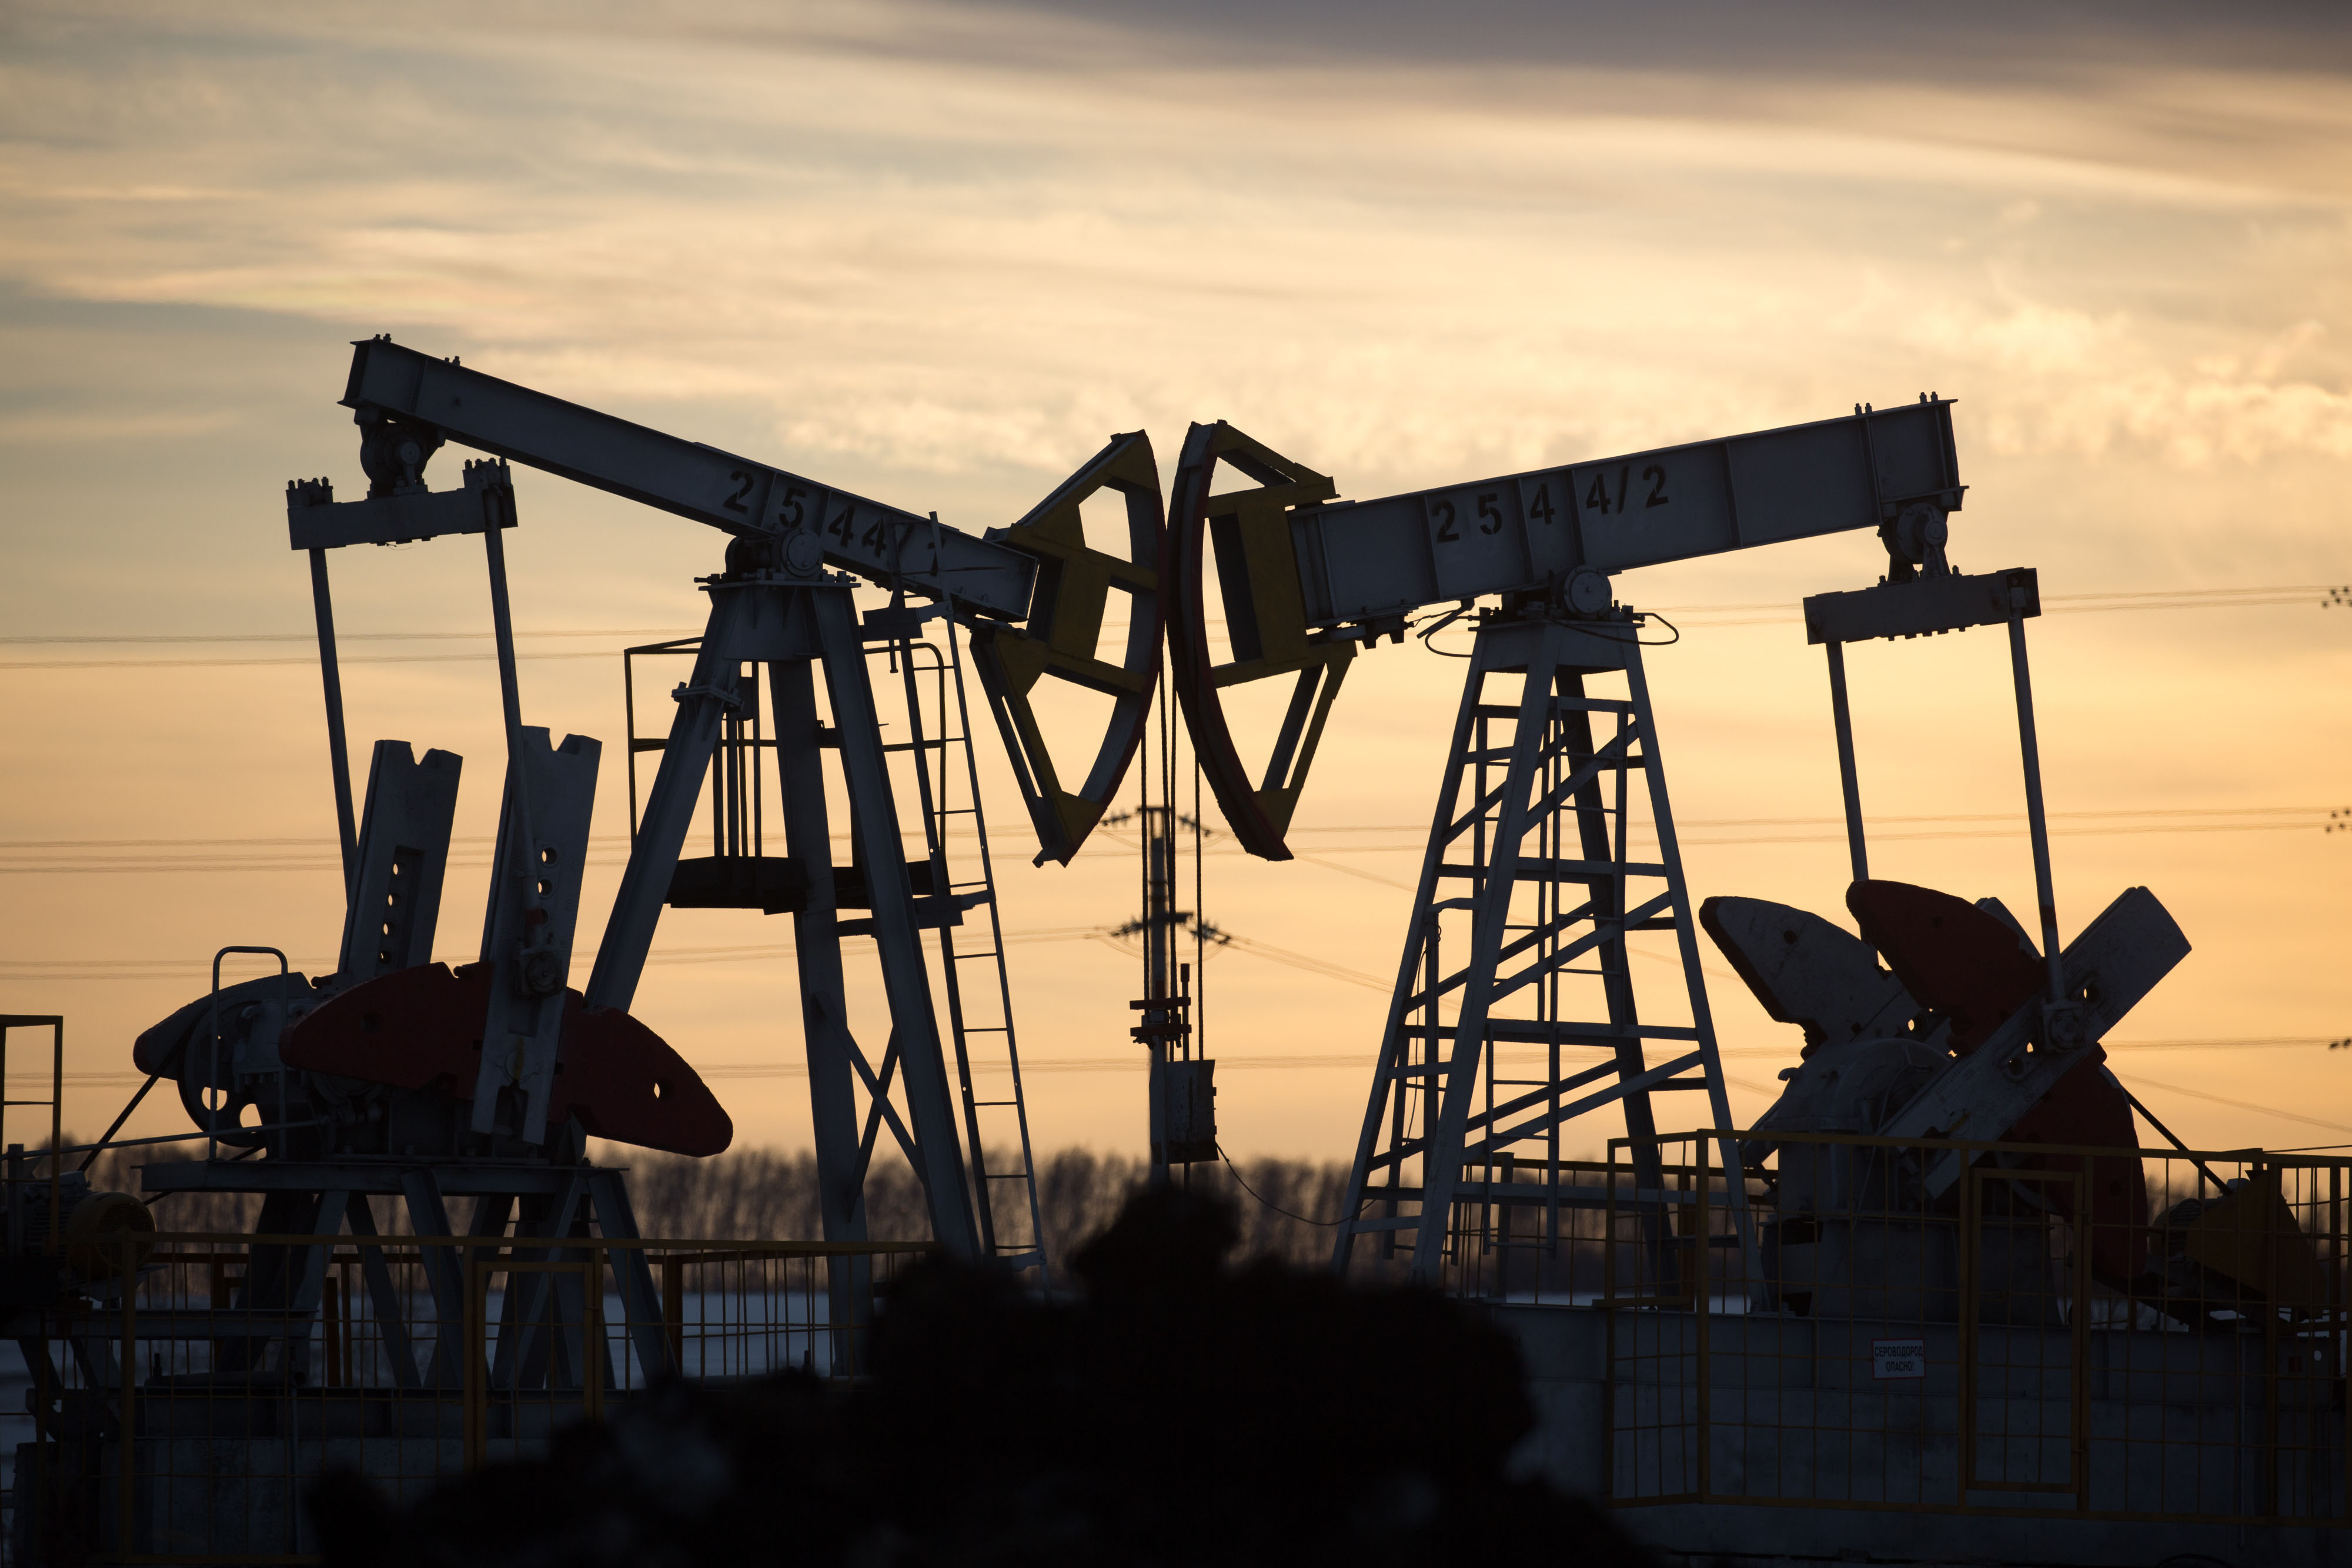 Країни ОПЕК попереджають про майбутню енергокризу через падіння видобутку нафти